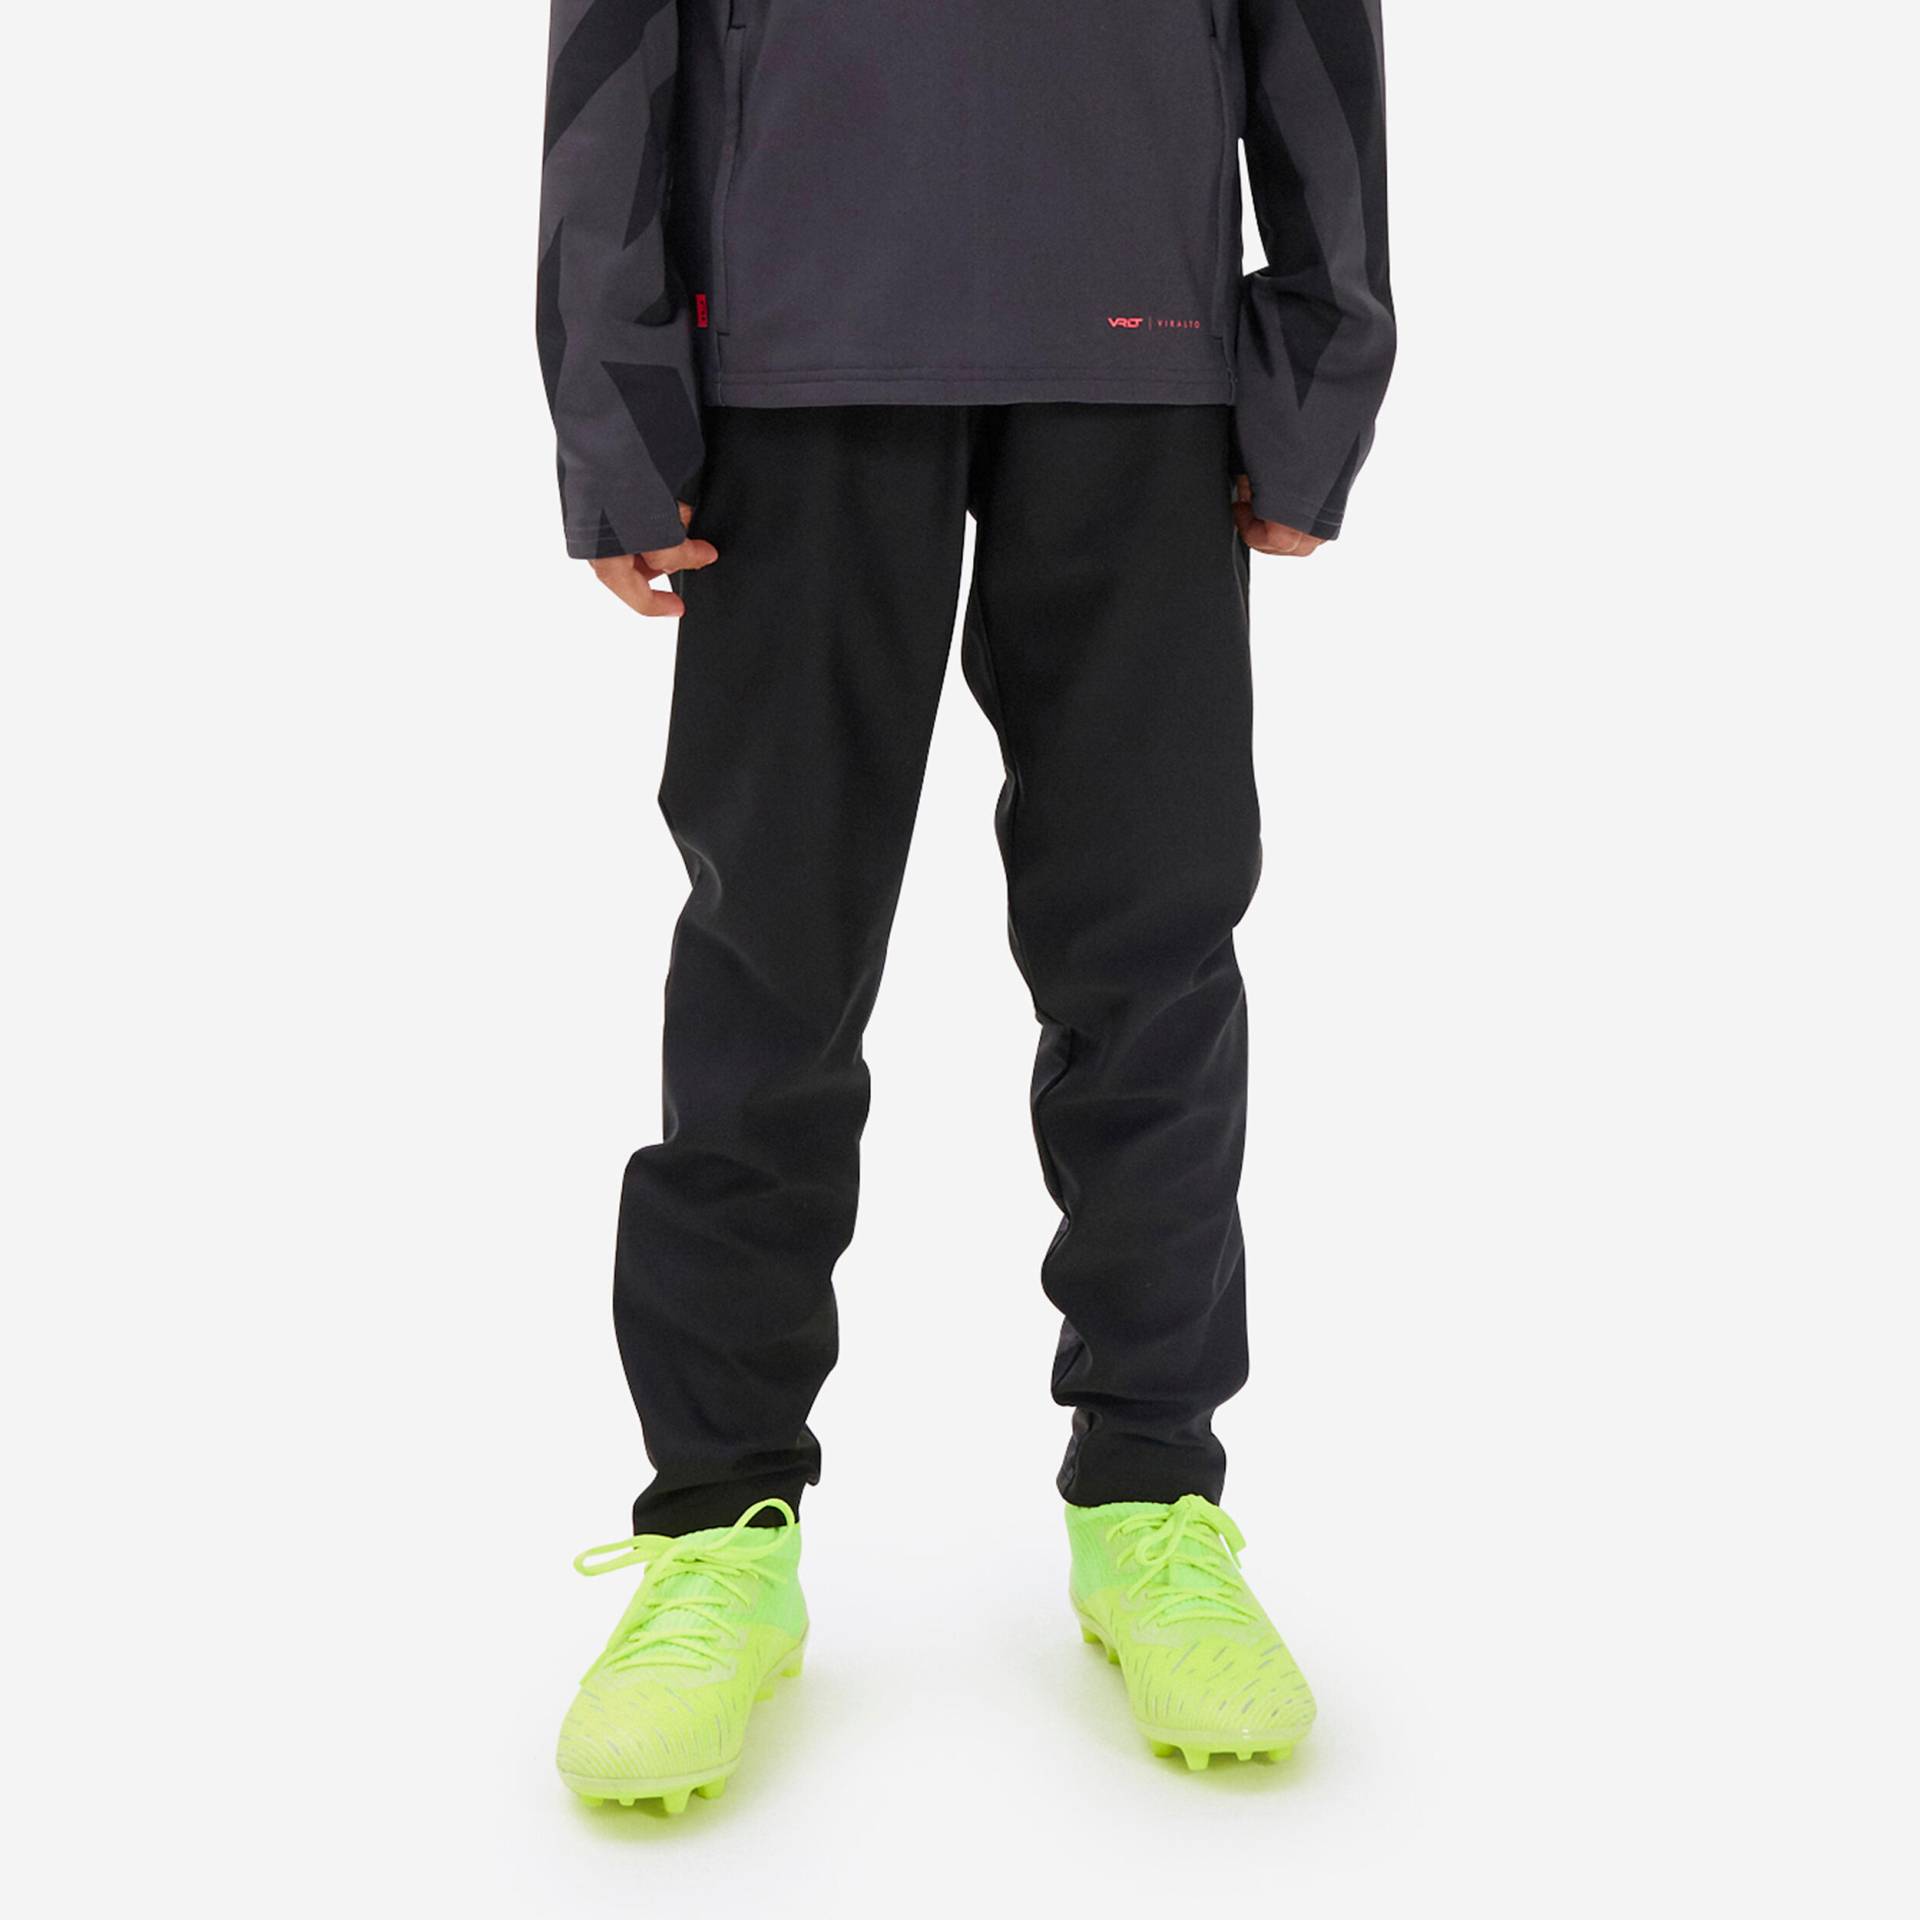 Kinder Fussball Sweatshirt mit Reissverschluss - Viralto Axton grau/schwarz von KIPSTA